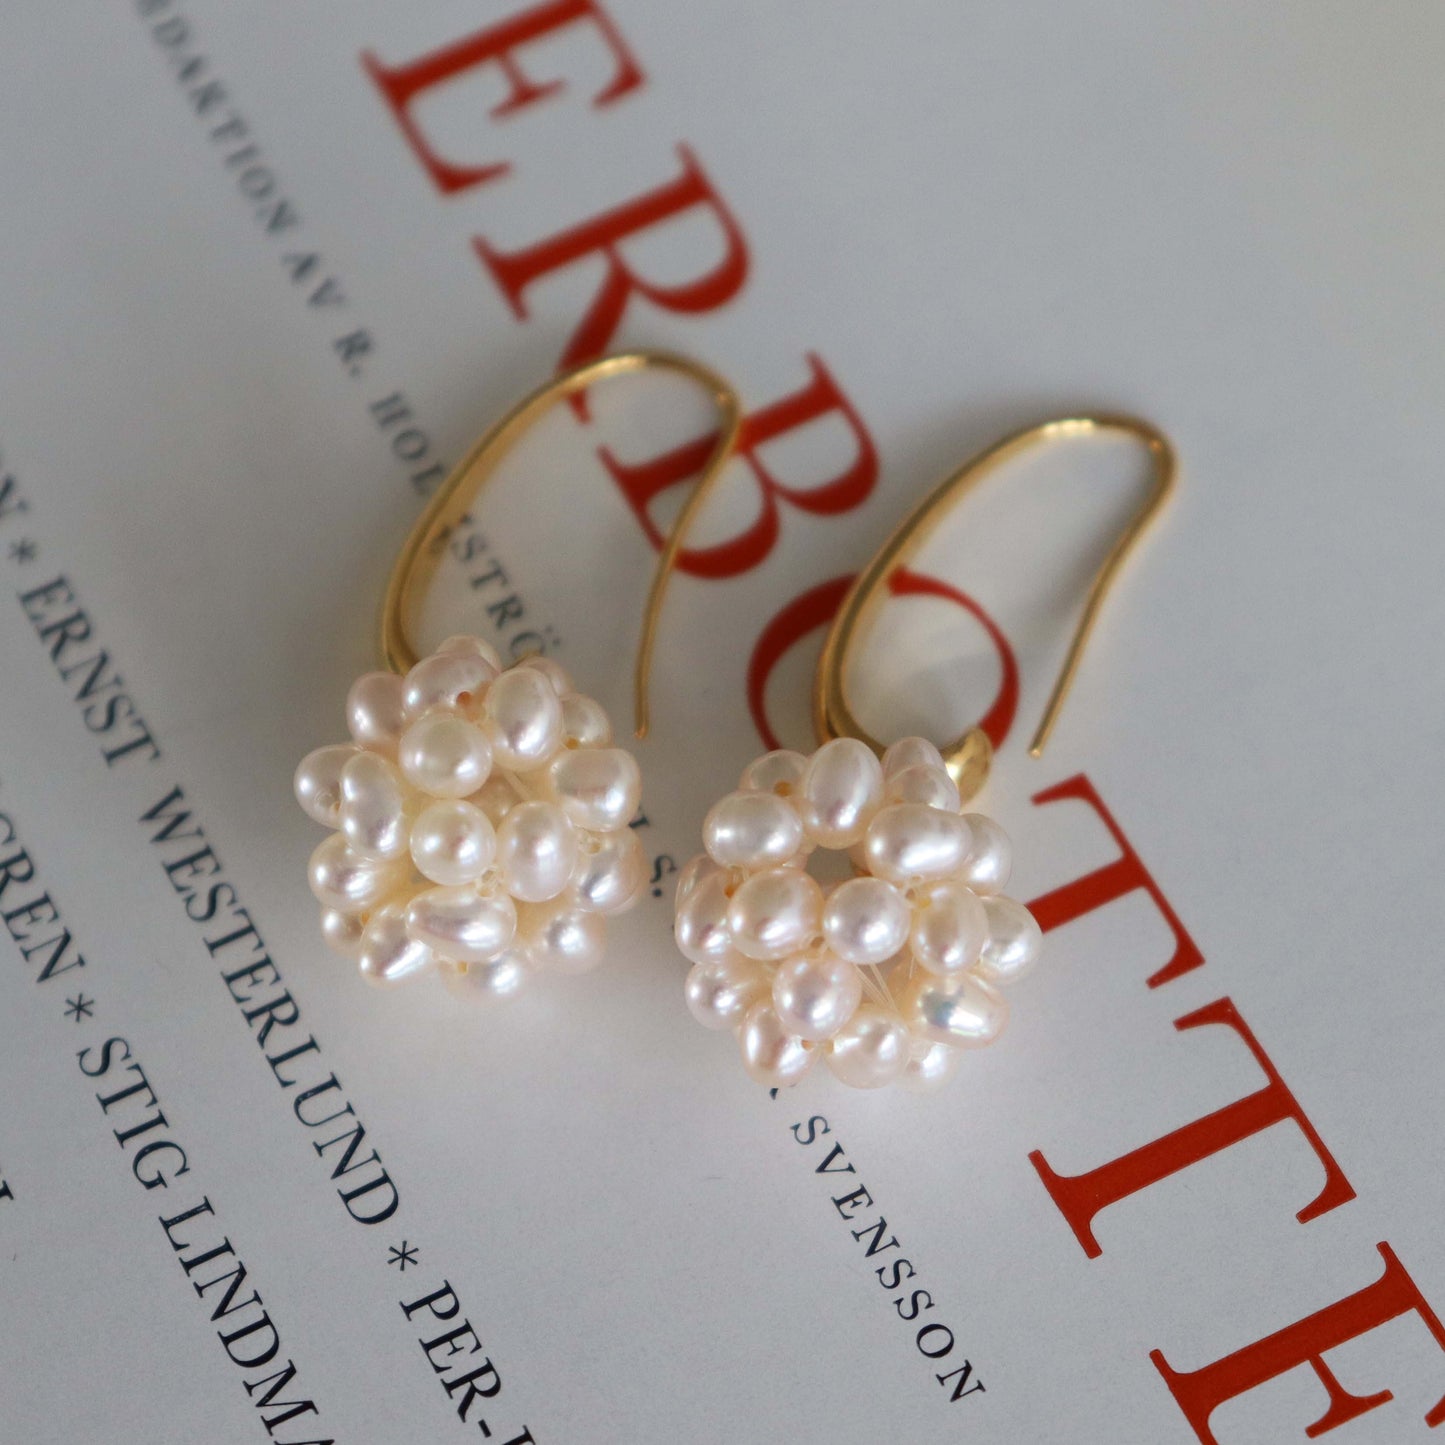 Genuine pearl hook earrings